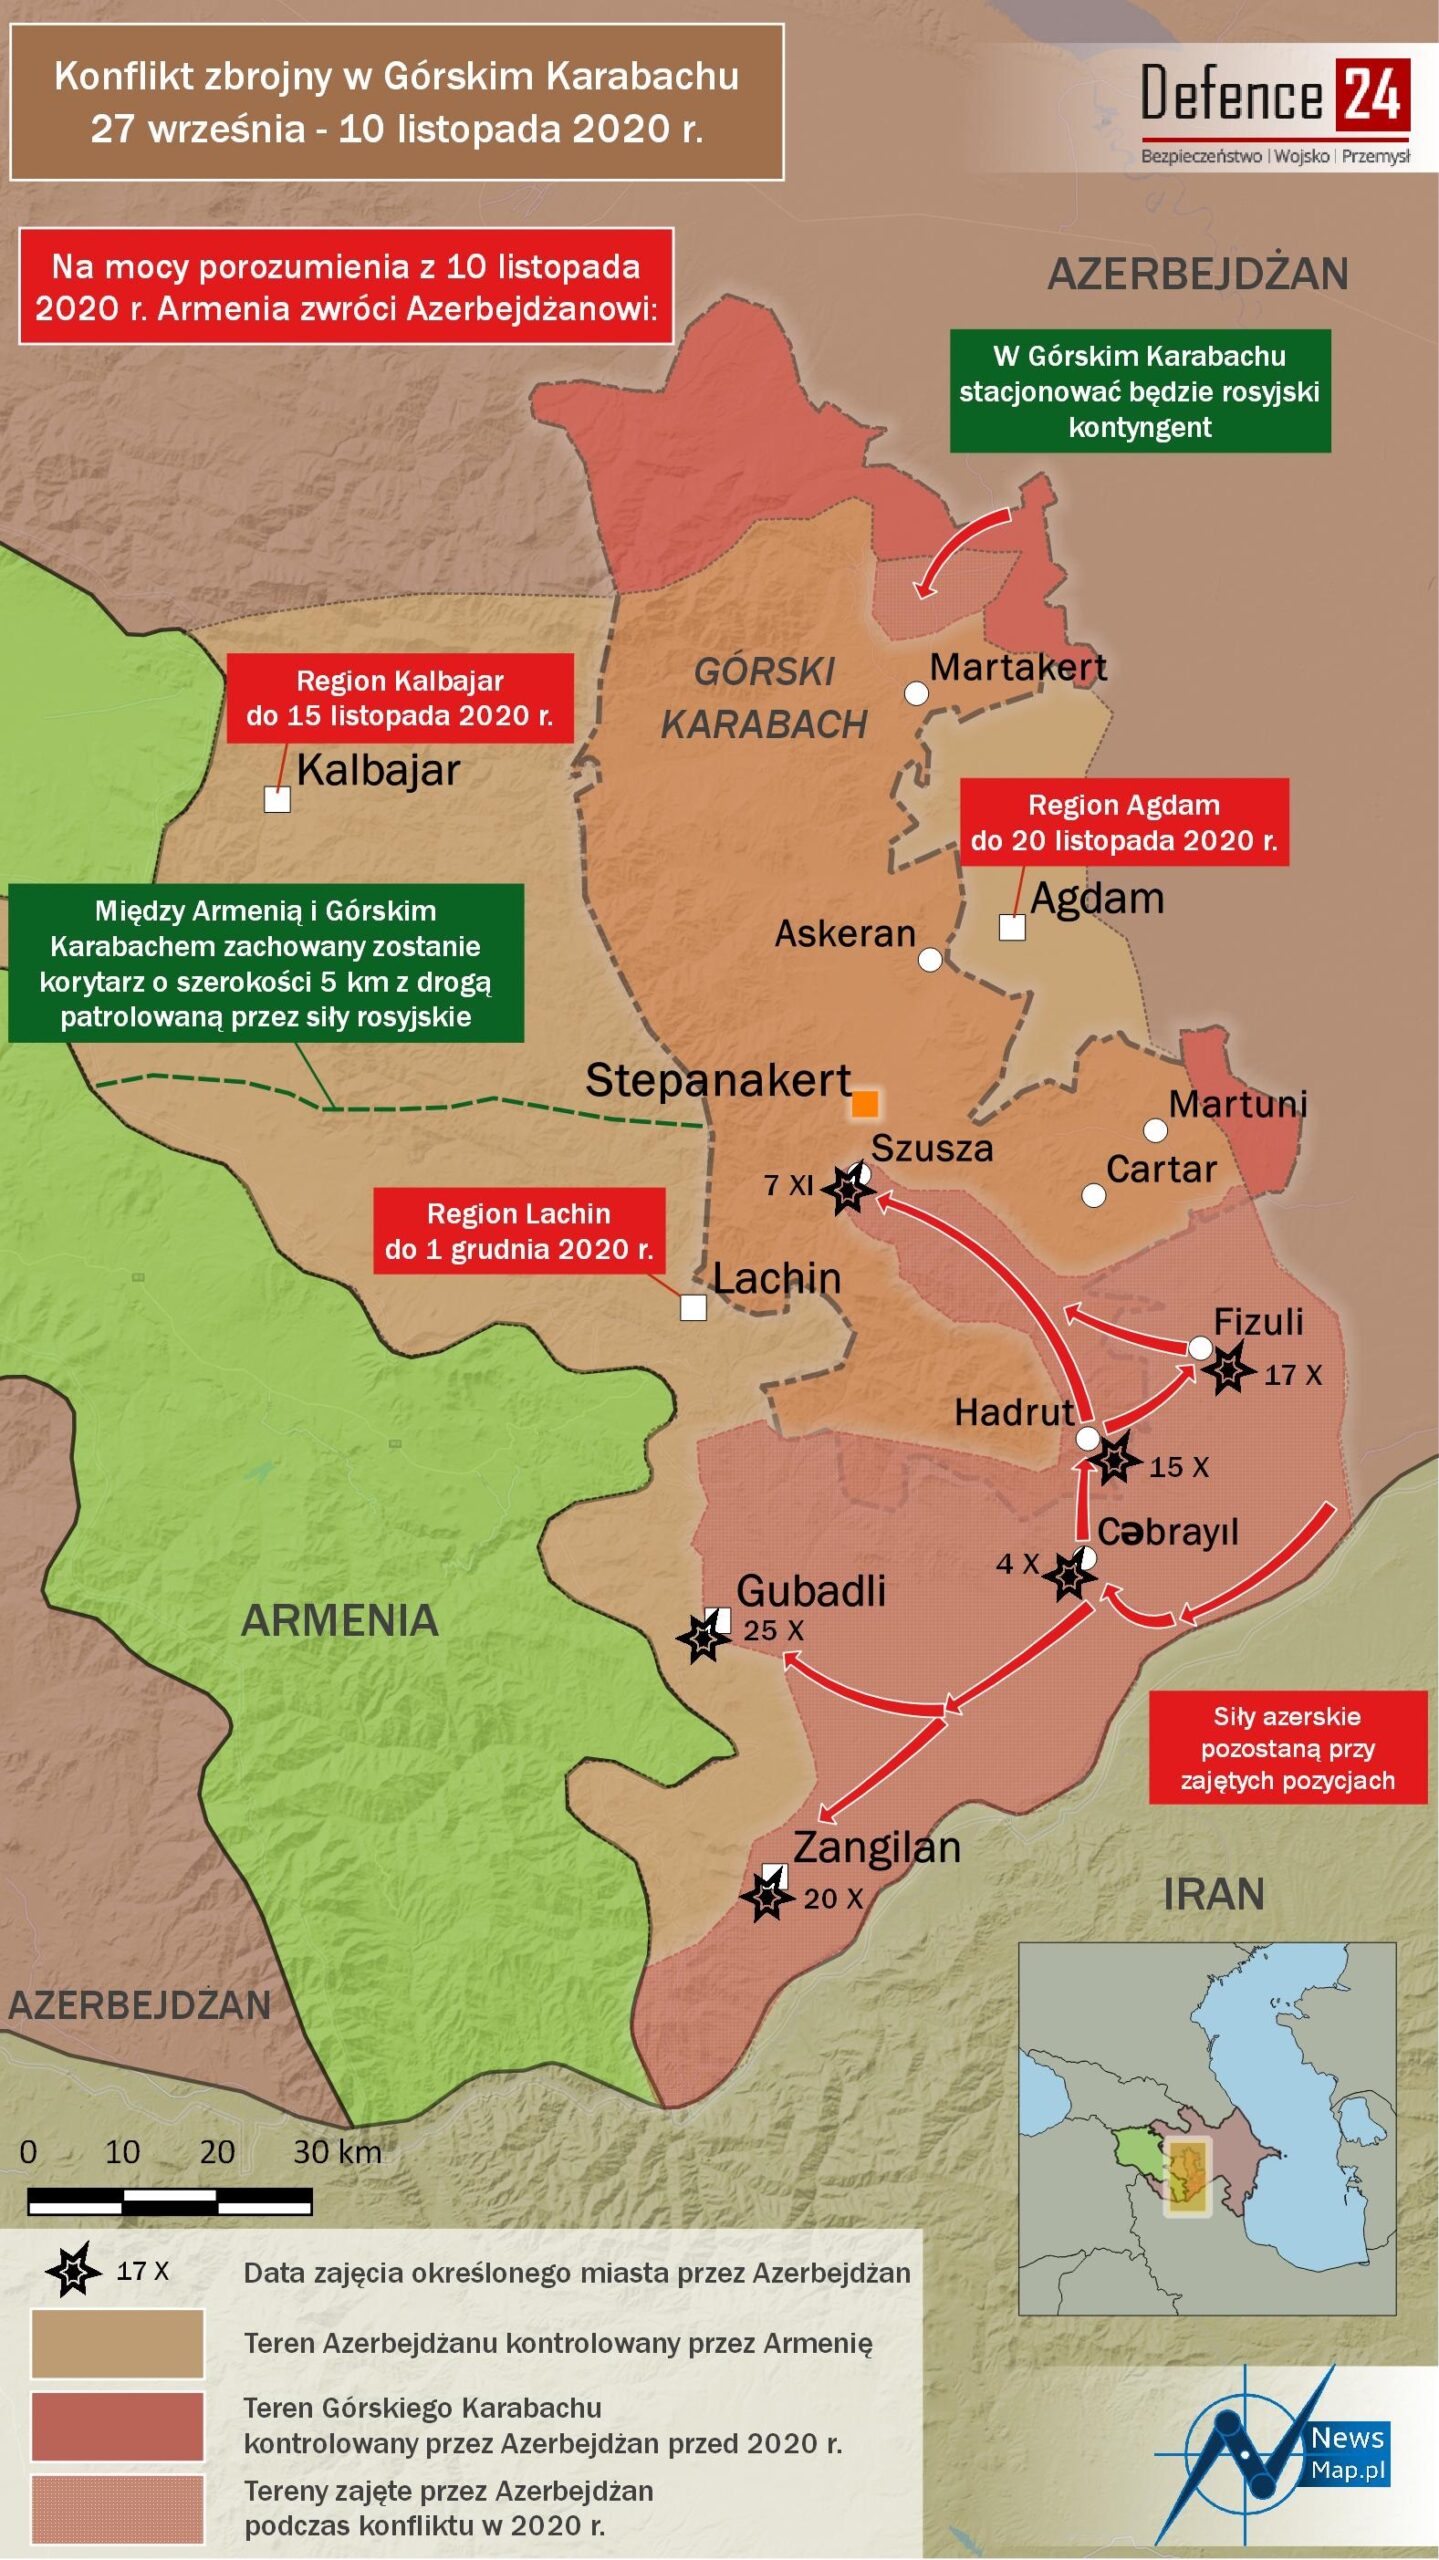 Konflikt w Górskim Karabachu 2020 - postanowienia pokojowe - D24